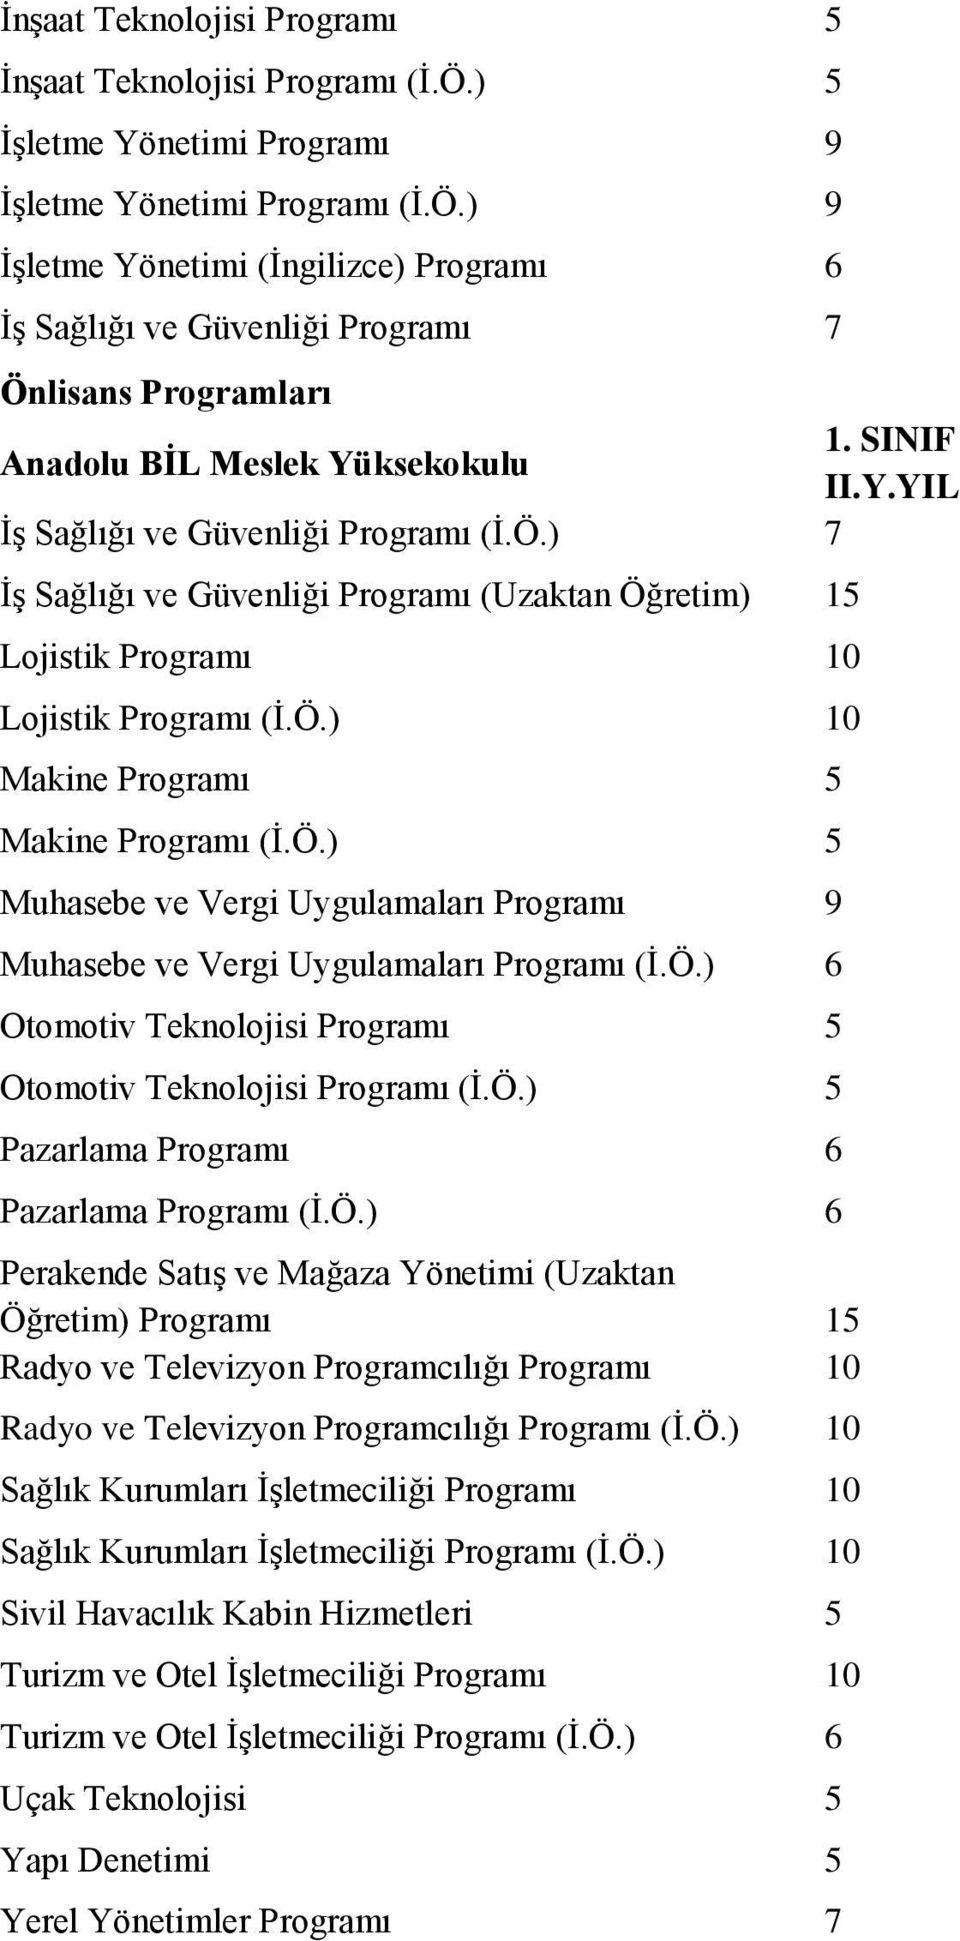 Ö.) 6 Otomotiv Teknolojisi Programı 5 Otomotiv Teknolojisi Programı (İ.Ö.) 5 Pazarlama Programı 6 Pazarlama Programı (İ.Ö.) 6 Perakende Satış ve Mağaza Yönetimi (Uzaktan Öğretim) Programı 15 Radyo ve Televizyon Programcılığı Programı 10 Radyo ve Televizyon Programcılığı Programı (İ.